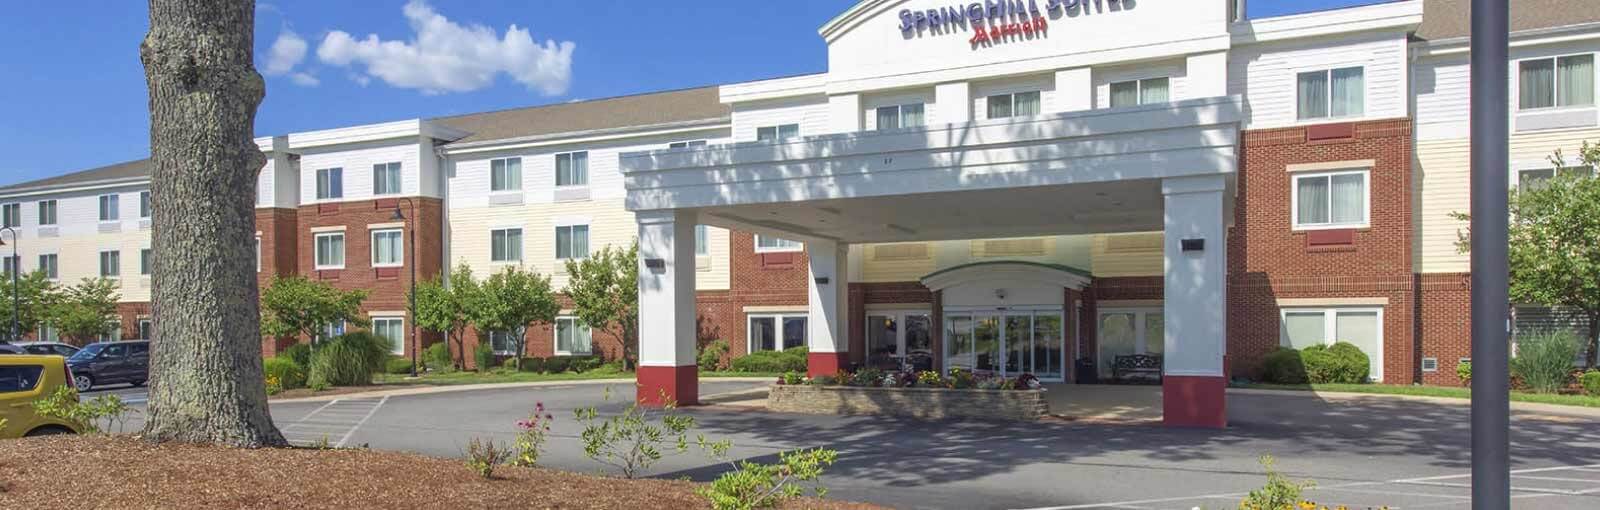 Spring Hills Suites Marriott